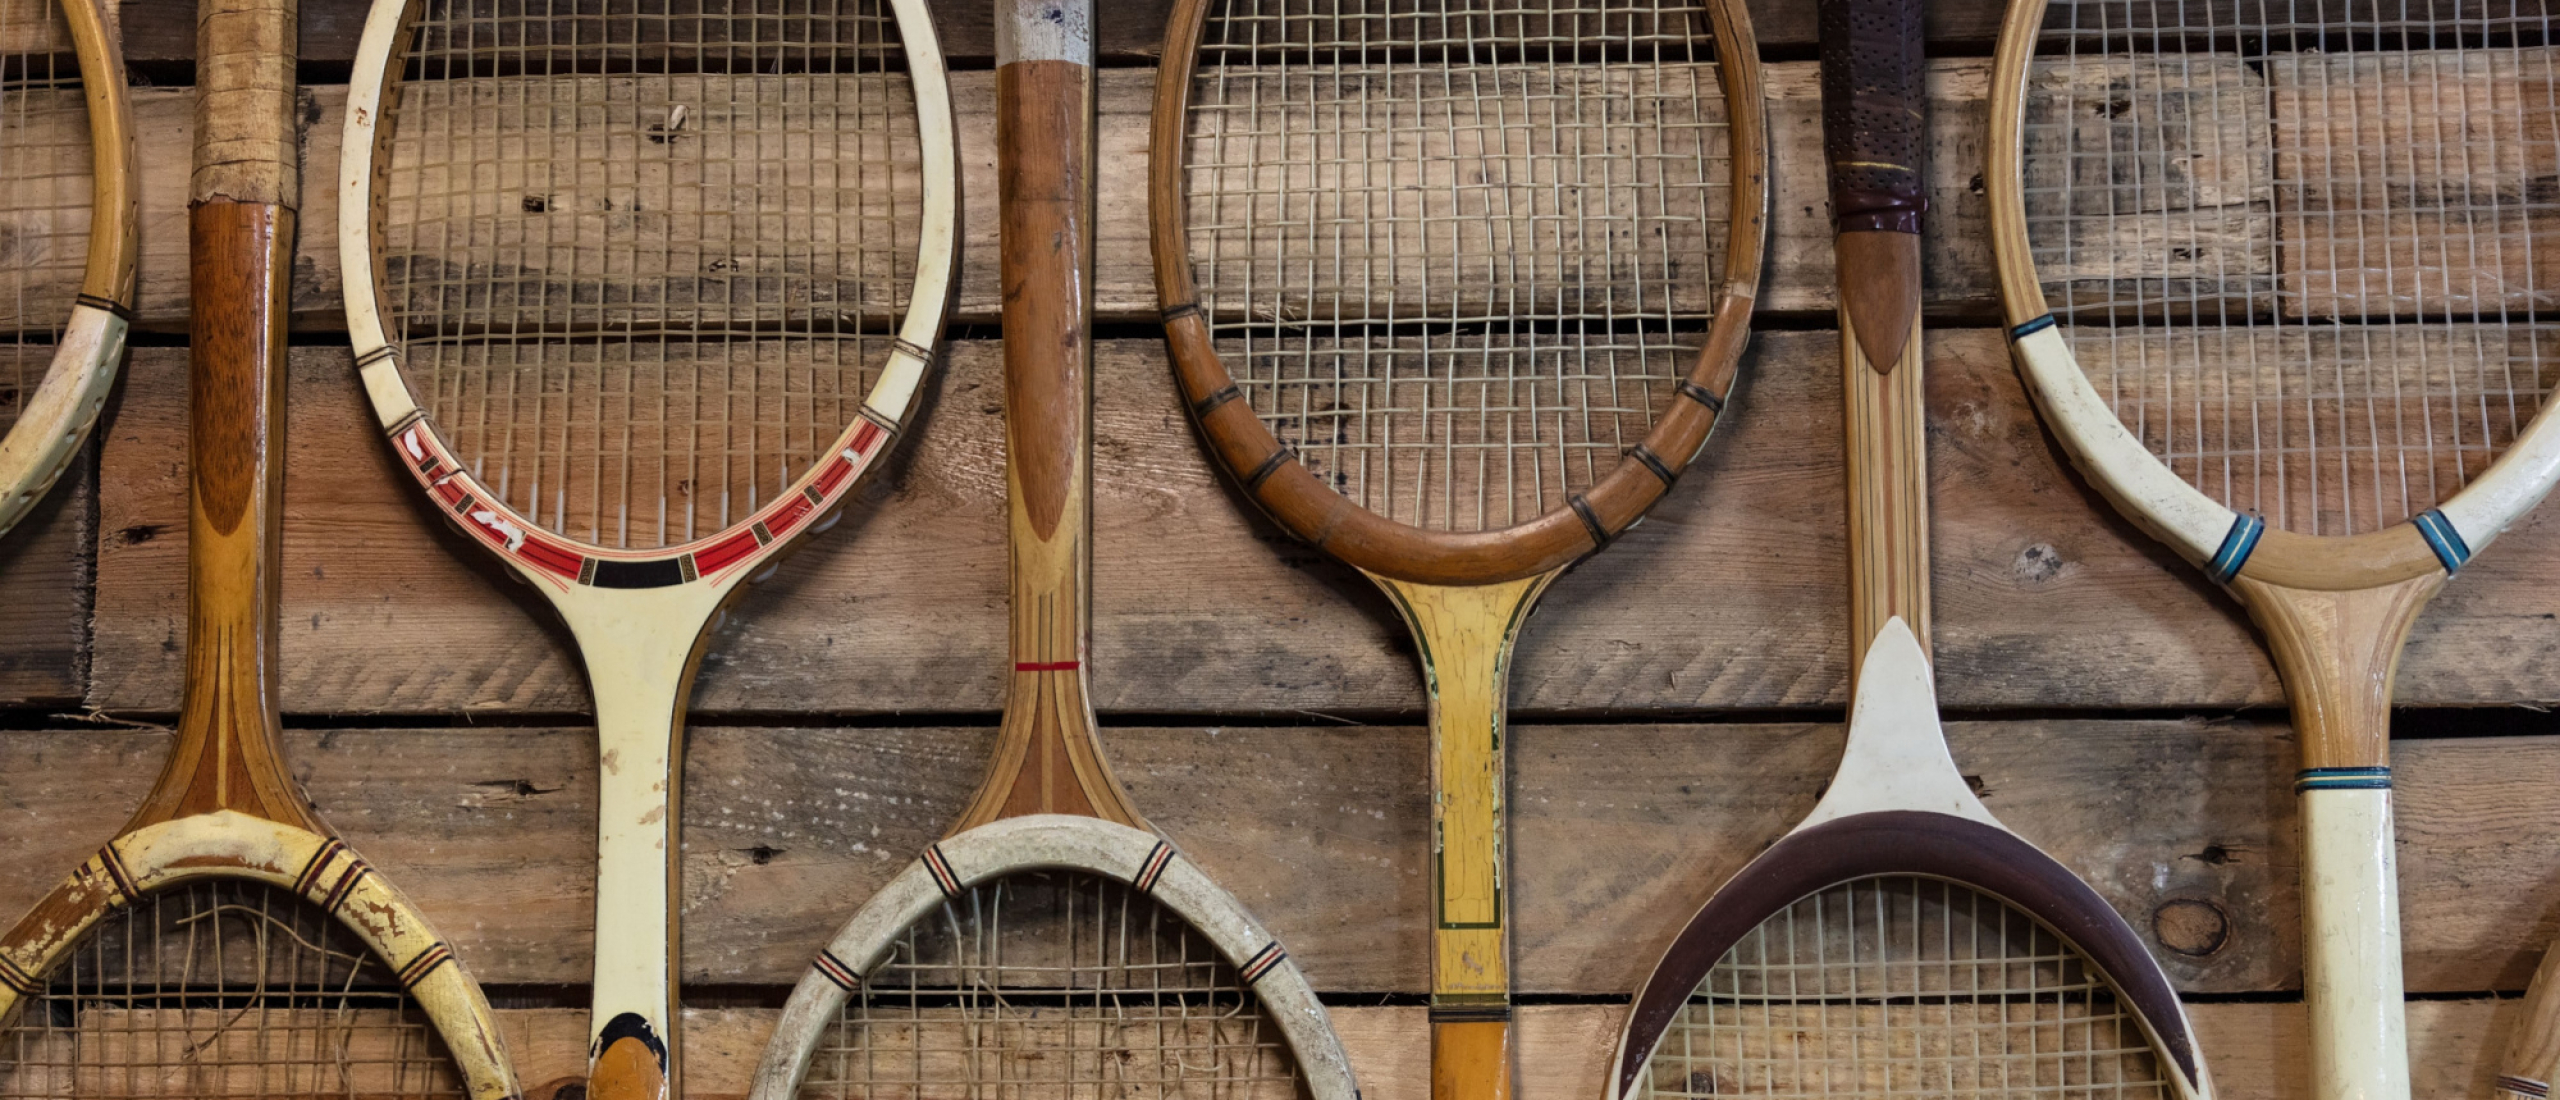 praktijk premie paars Tennisracket kopen? | Vergelijk alle merken – Tennis-racket.nl